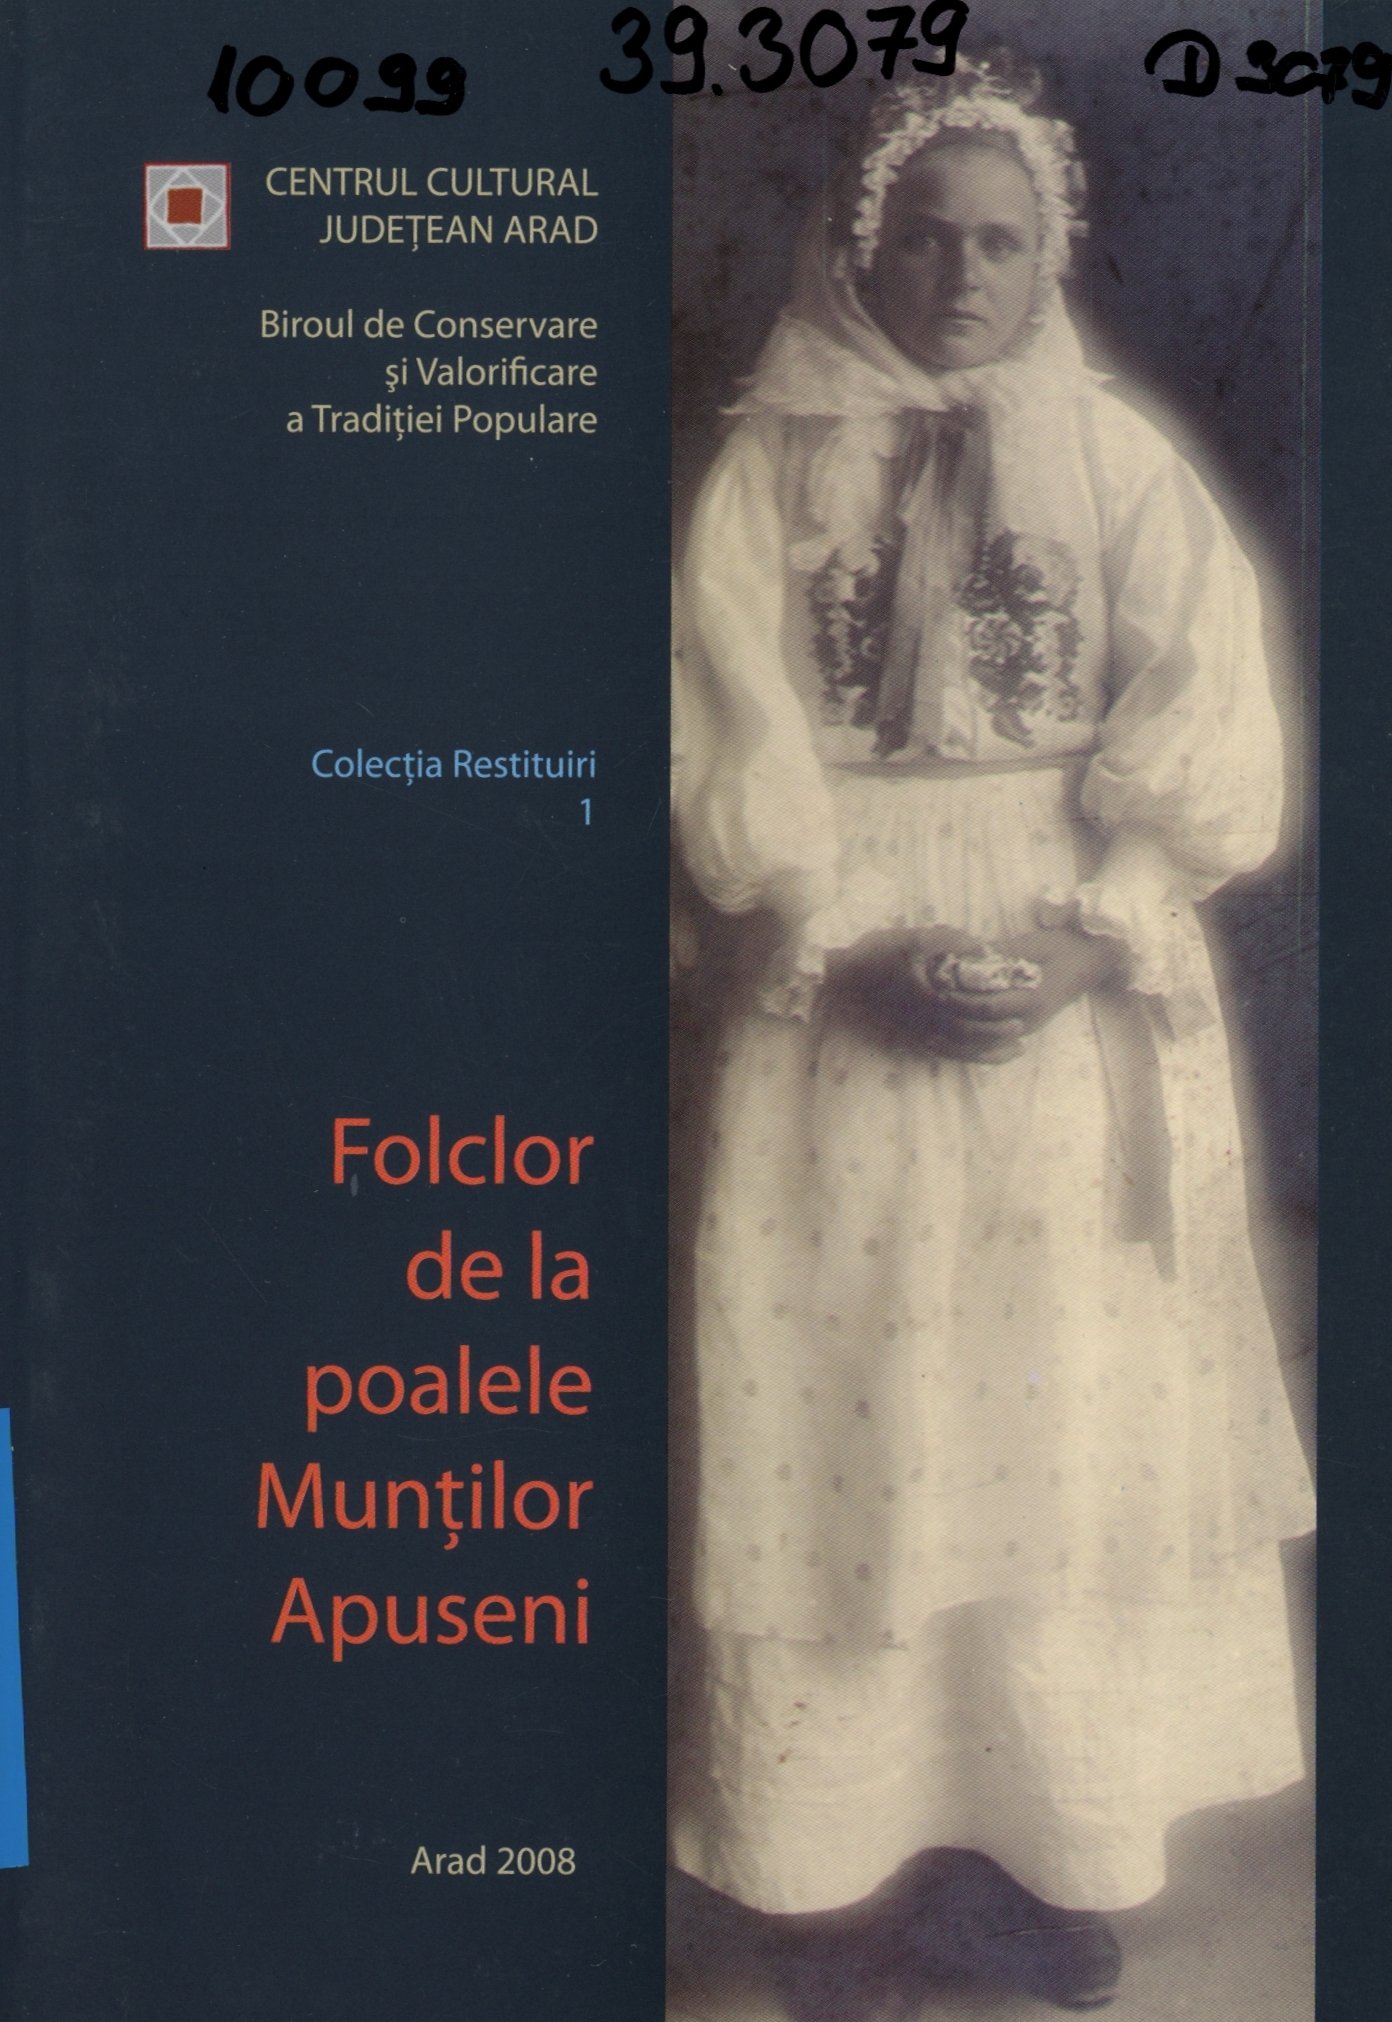 Folclor de la poalele Muntilor Apuseni (Erkel Ferenc Múzeum és Könyvtár, Gyula CC BY-NC-SA)